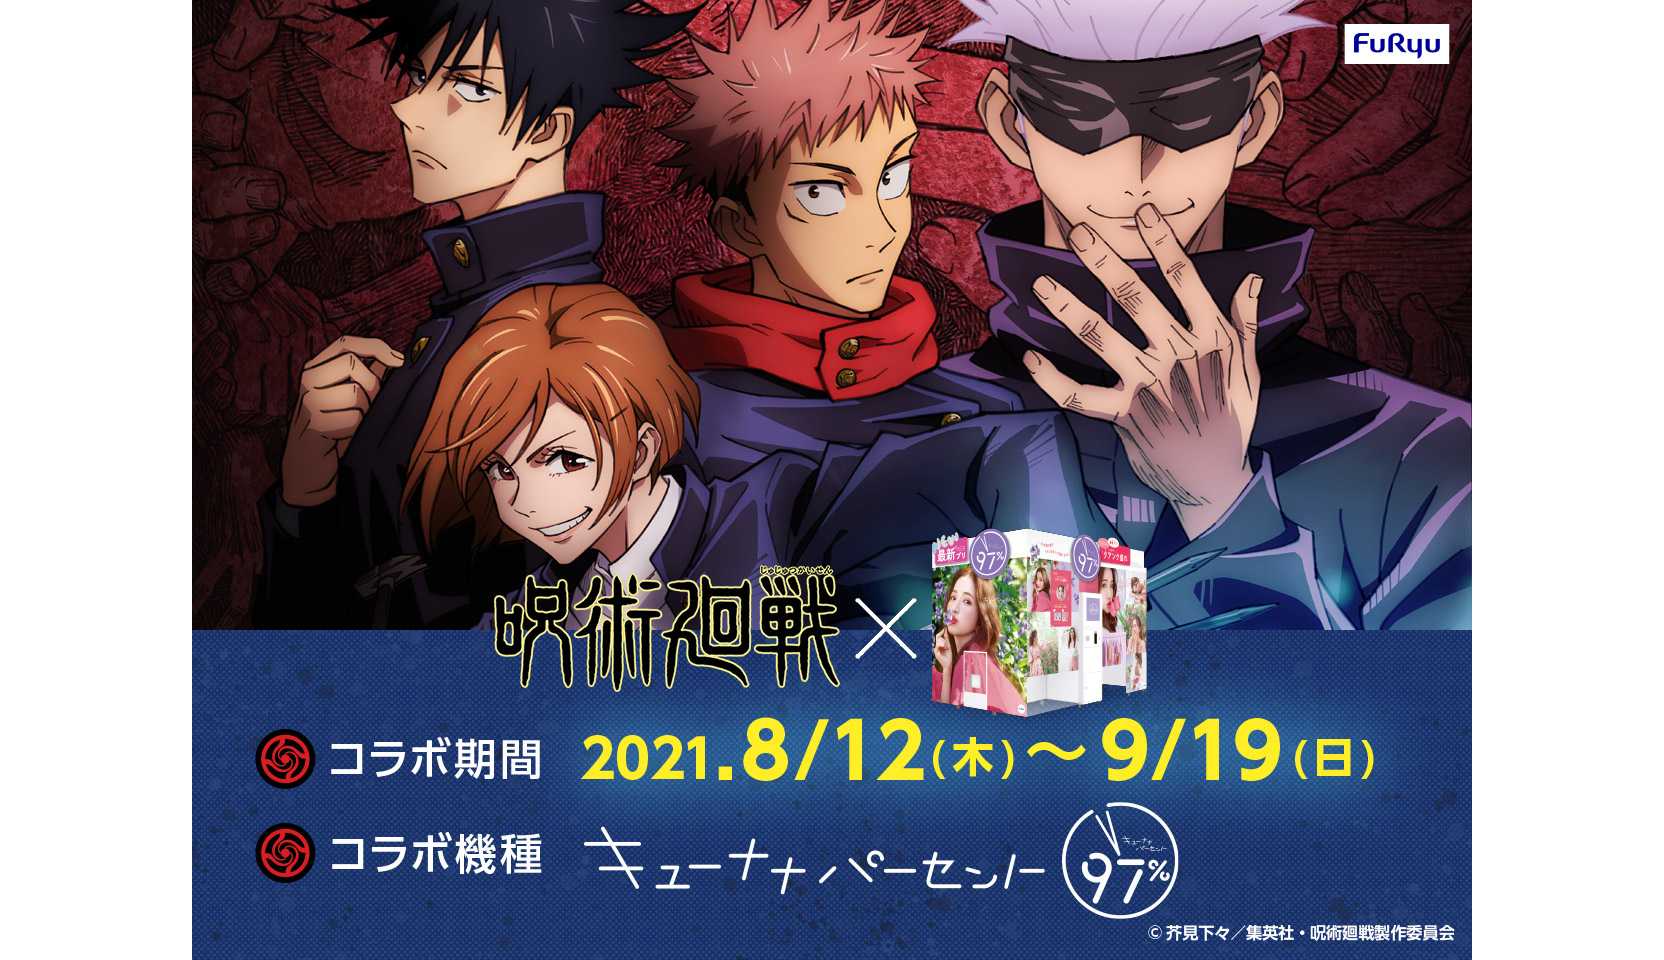 Announcing the Jujutsu Kaisen Anime Collab Event!｜Ninjala